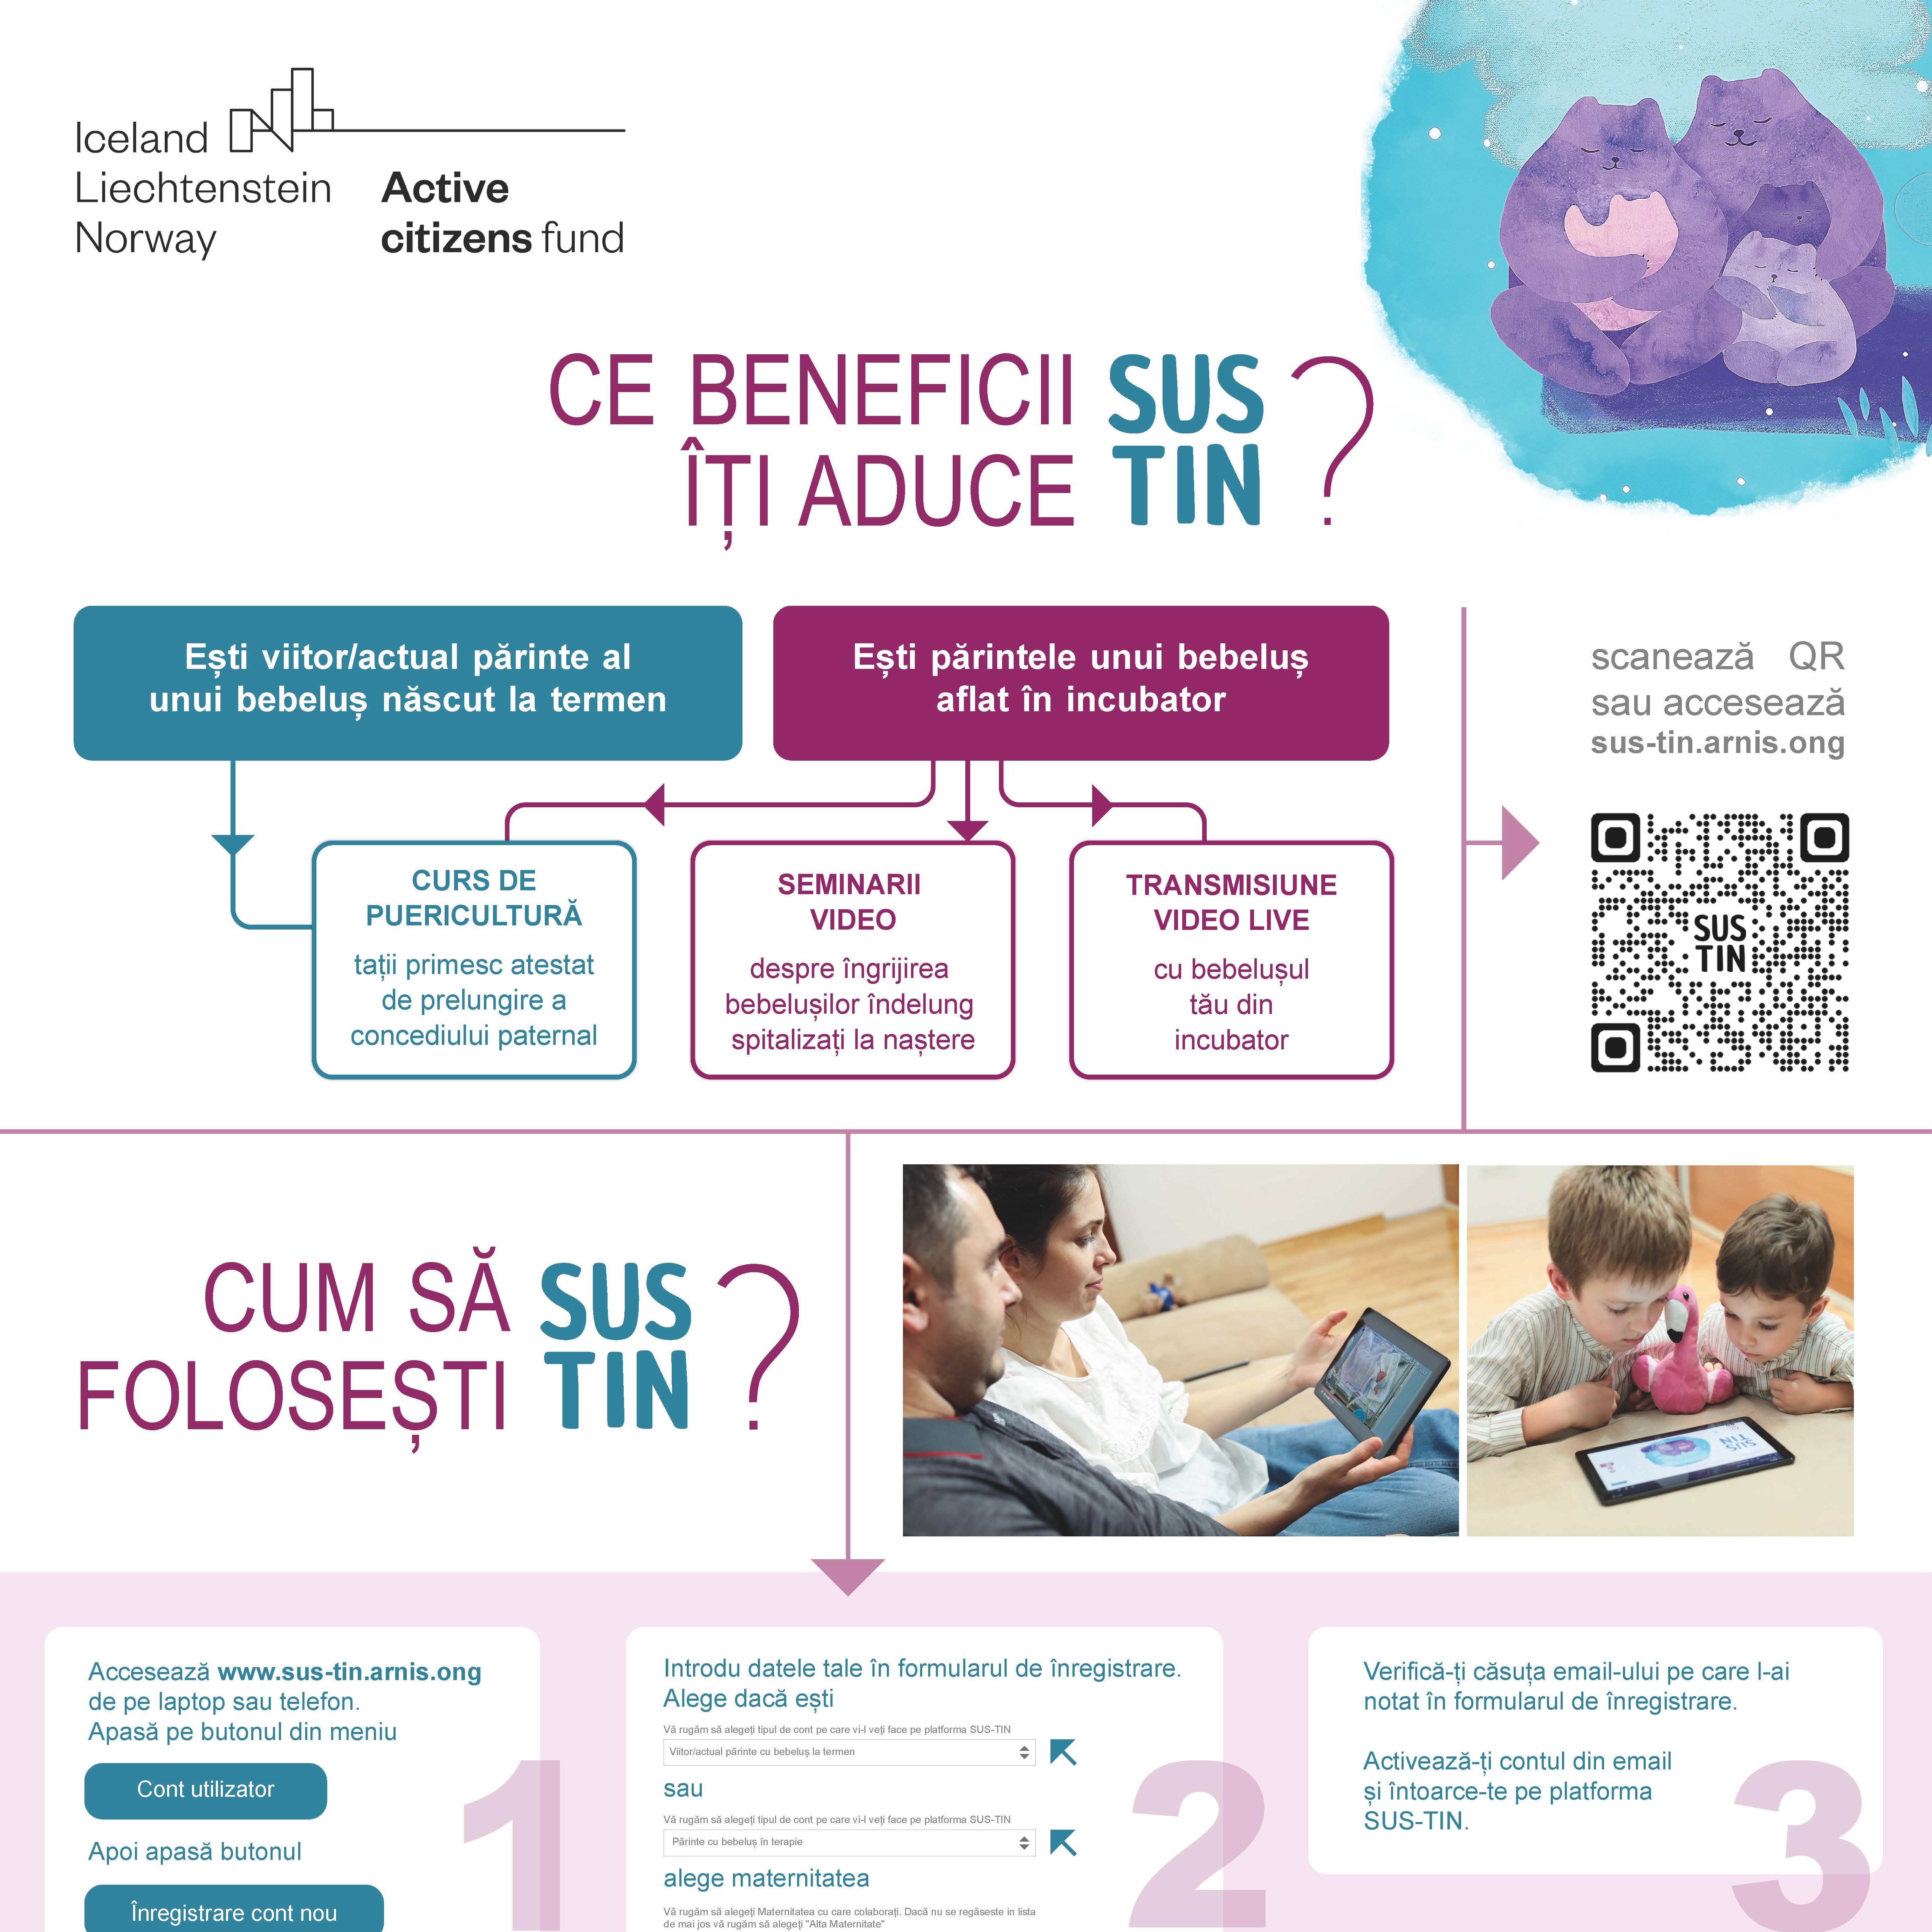 Info-grafic Beneficii SUS-TIN